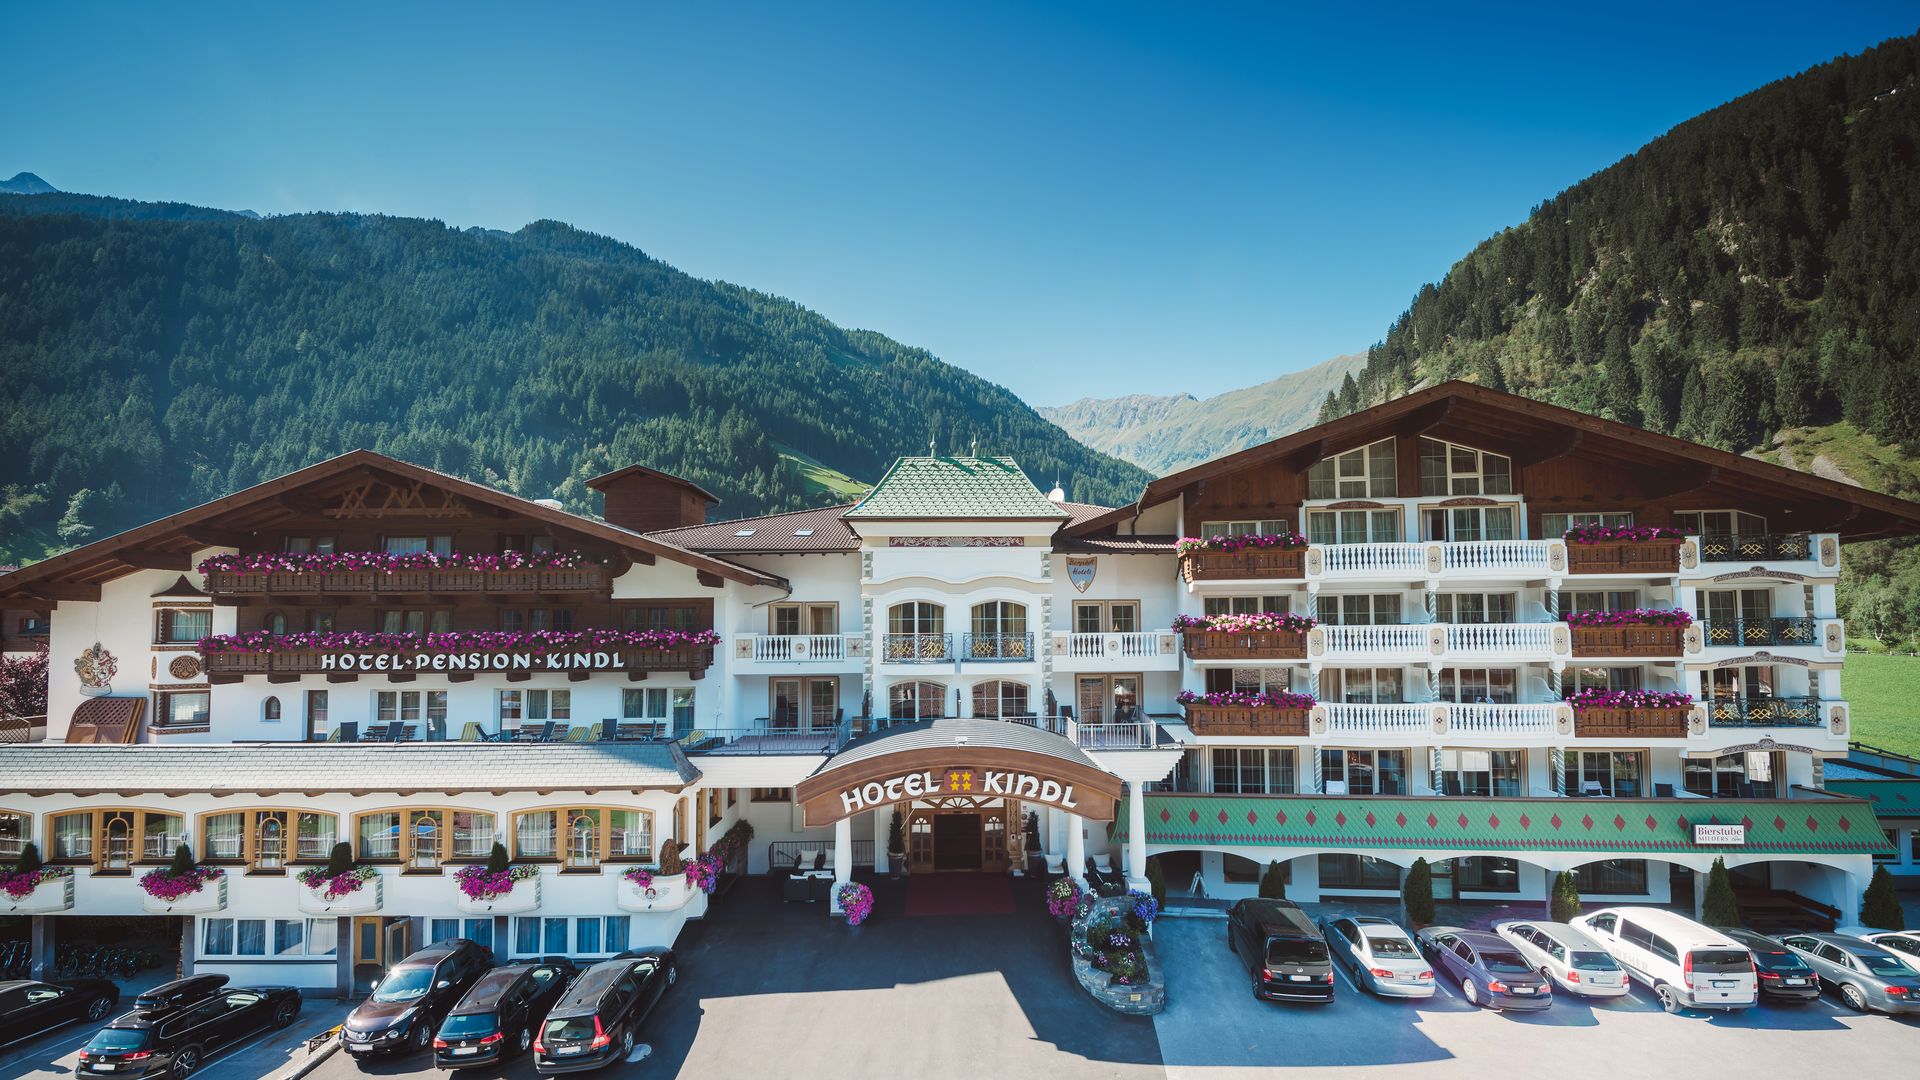 Familienurlaub mit dem Nachwuchs wird zu einem rundum schönen Erlebnis im Alpenhotel Kindl!